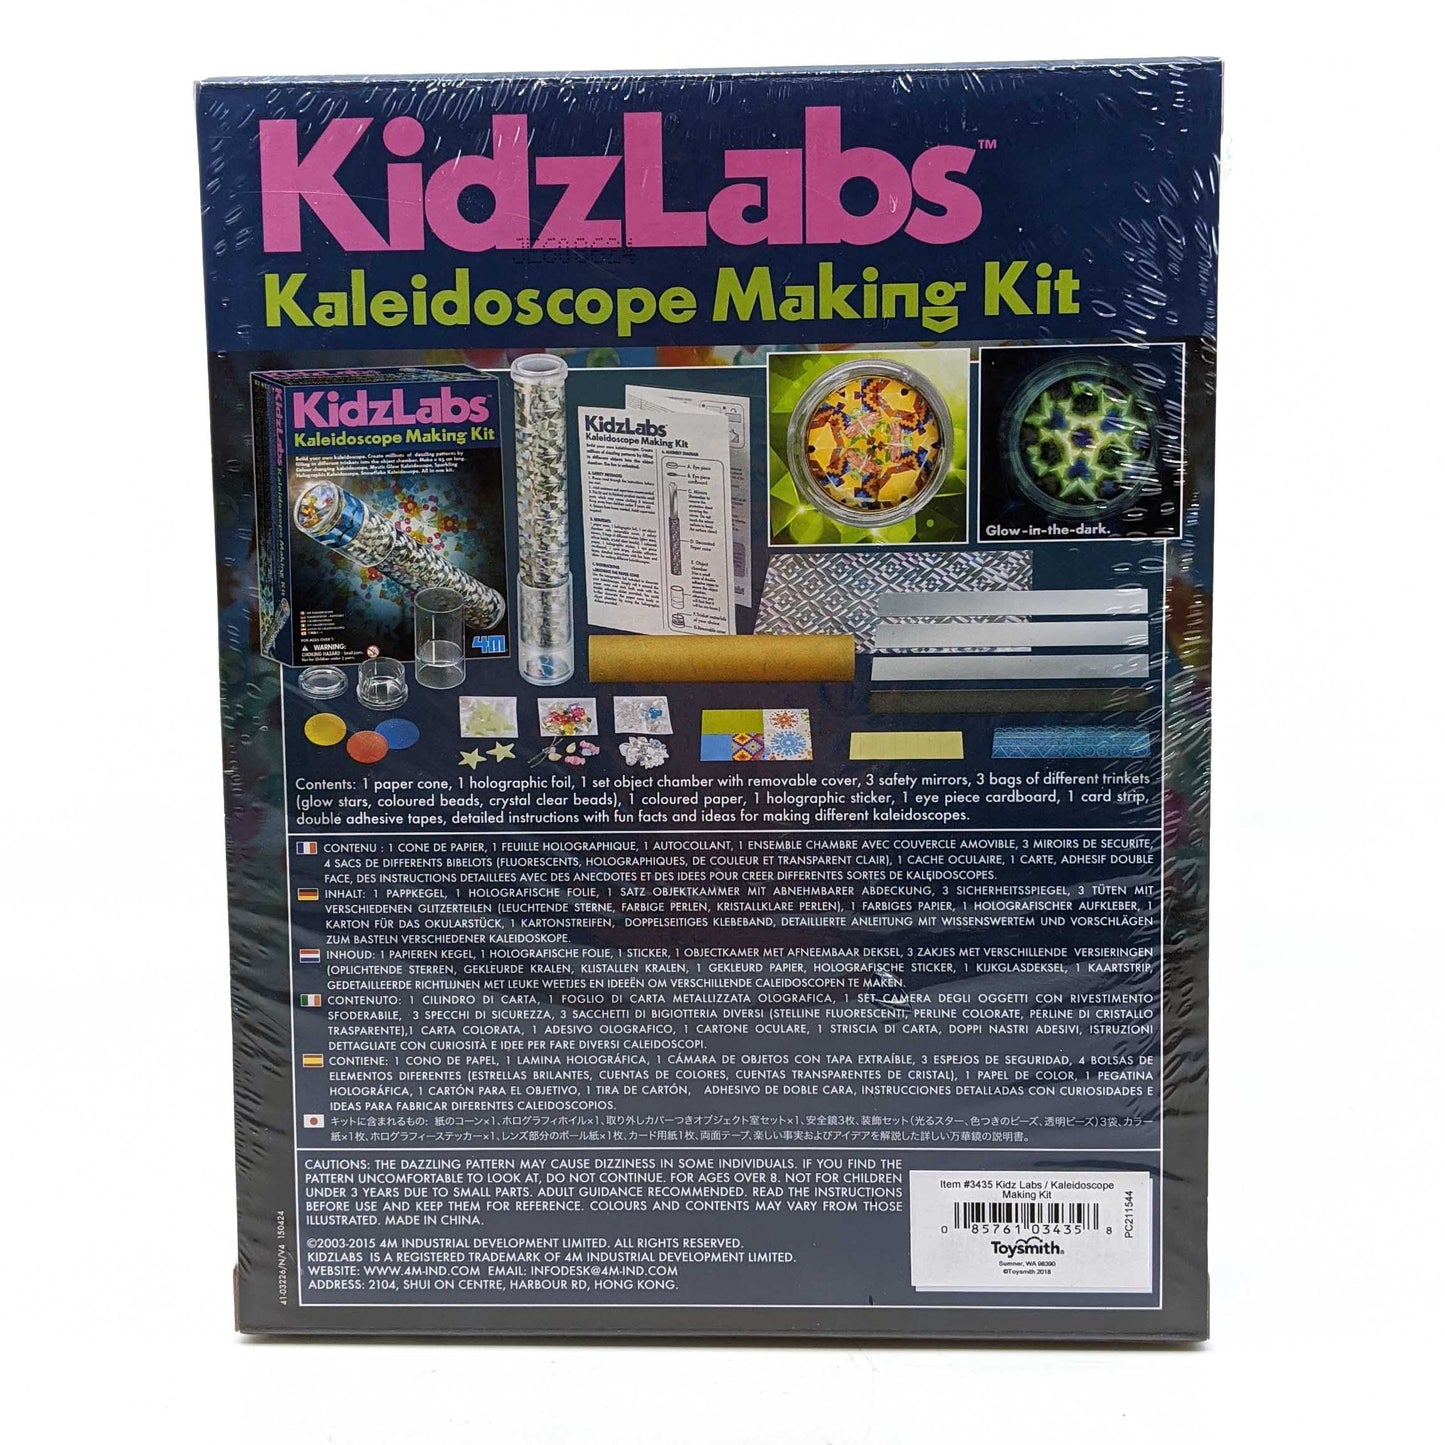 Kidzlabs Kaleidoscope Making Kit